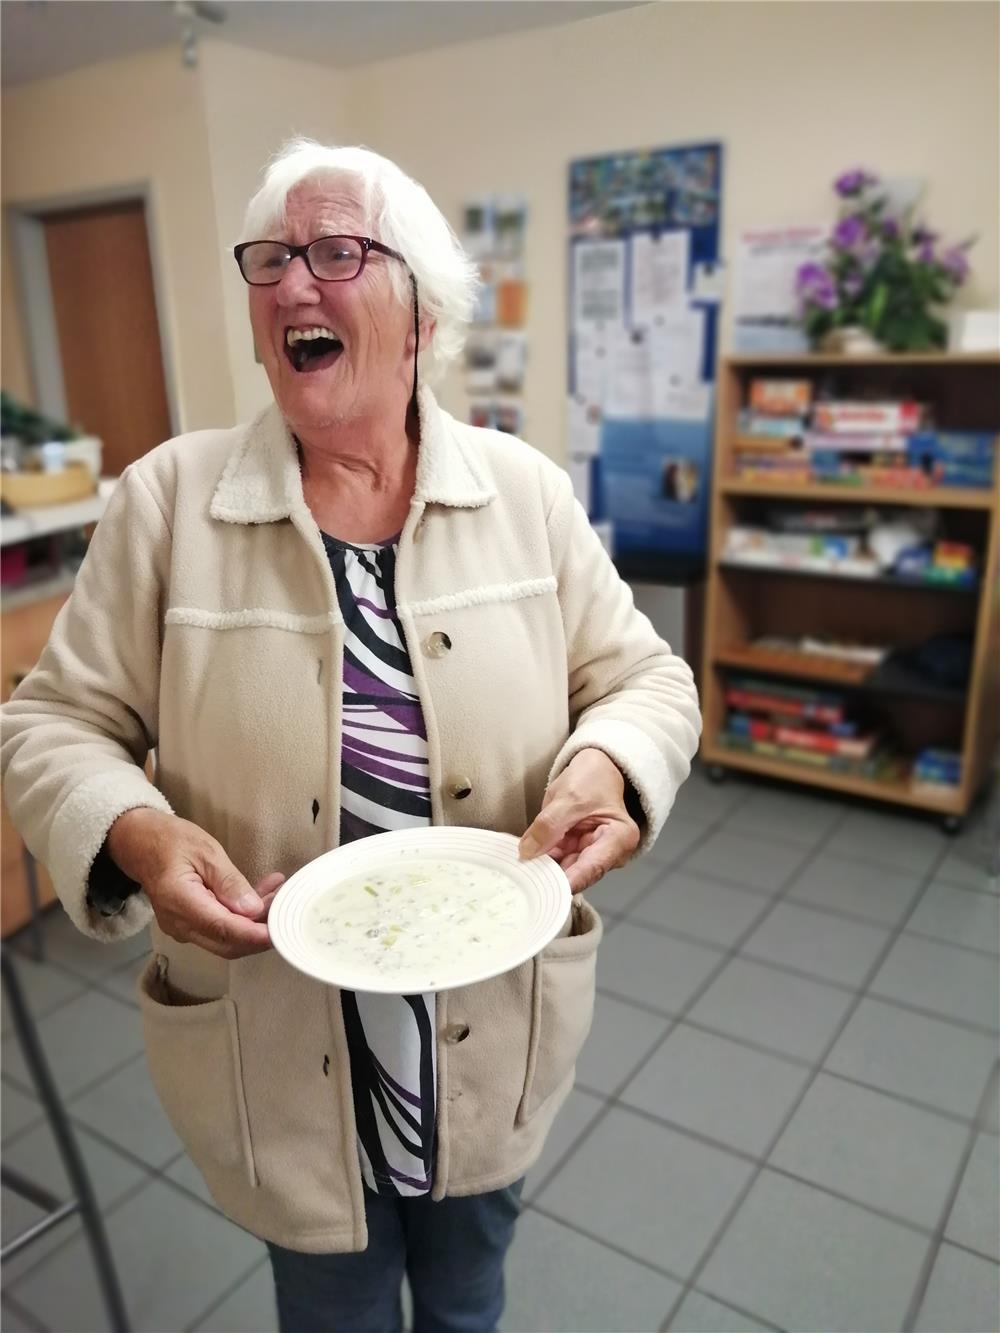 Lachende Frau mit einem Teller in der Hand (Quelle: Caritasverband Gießen)